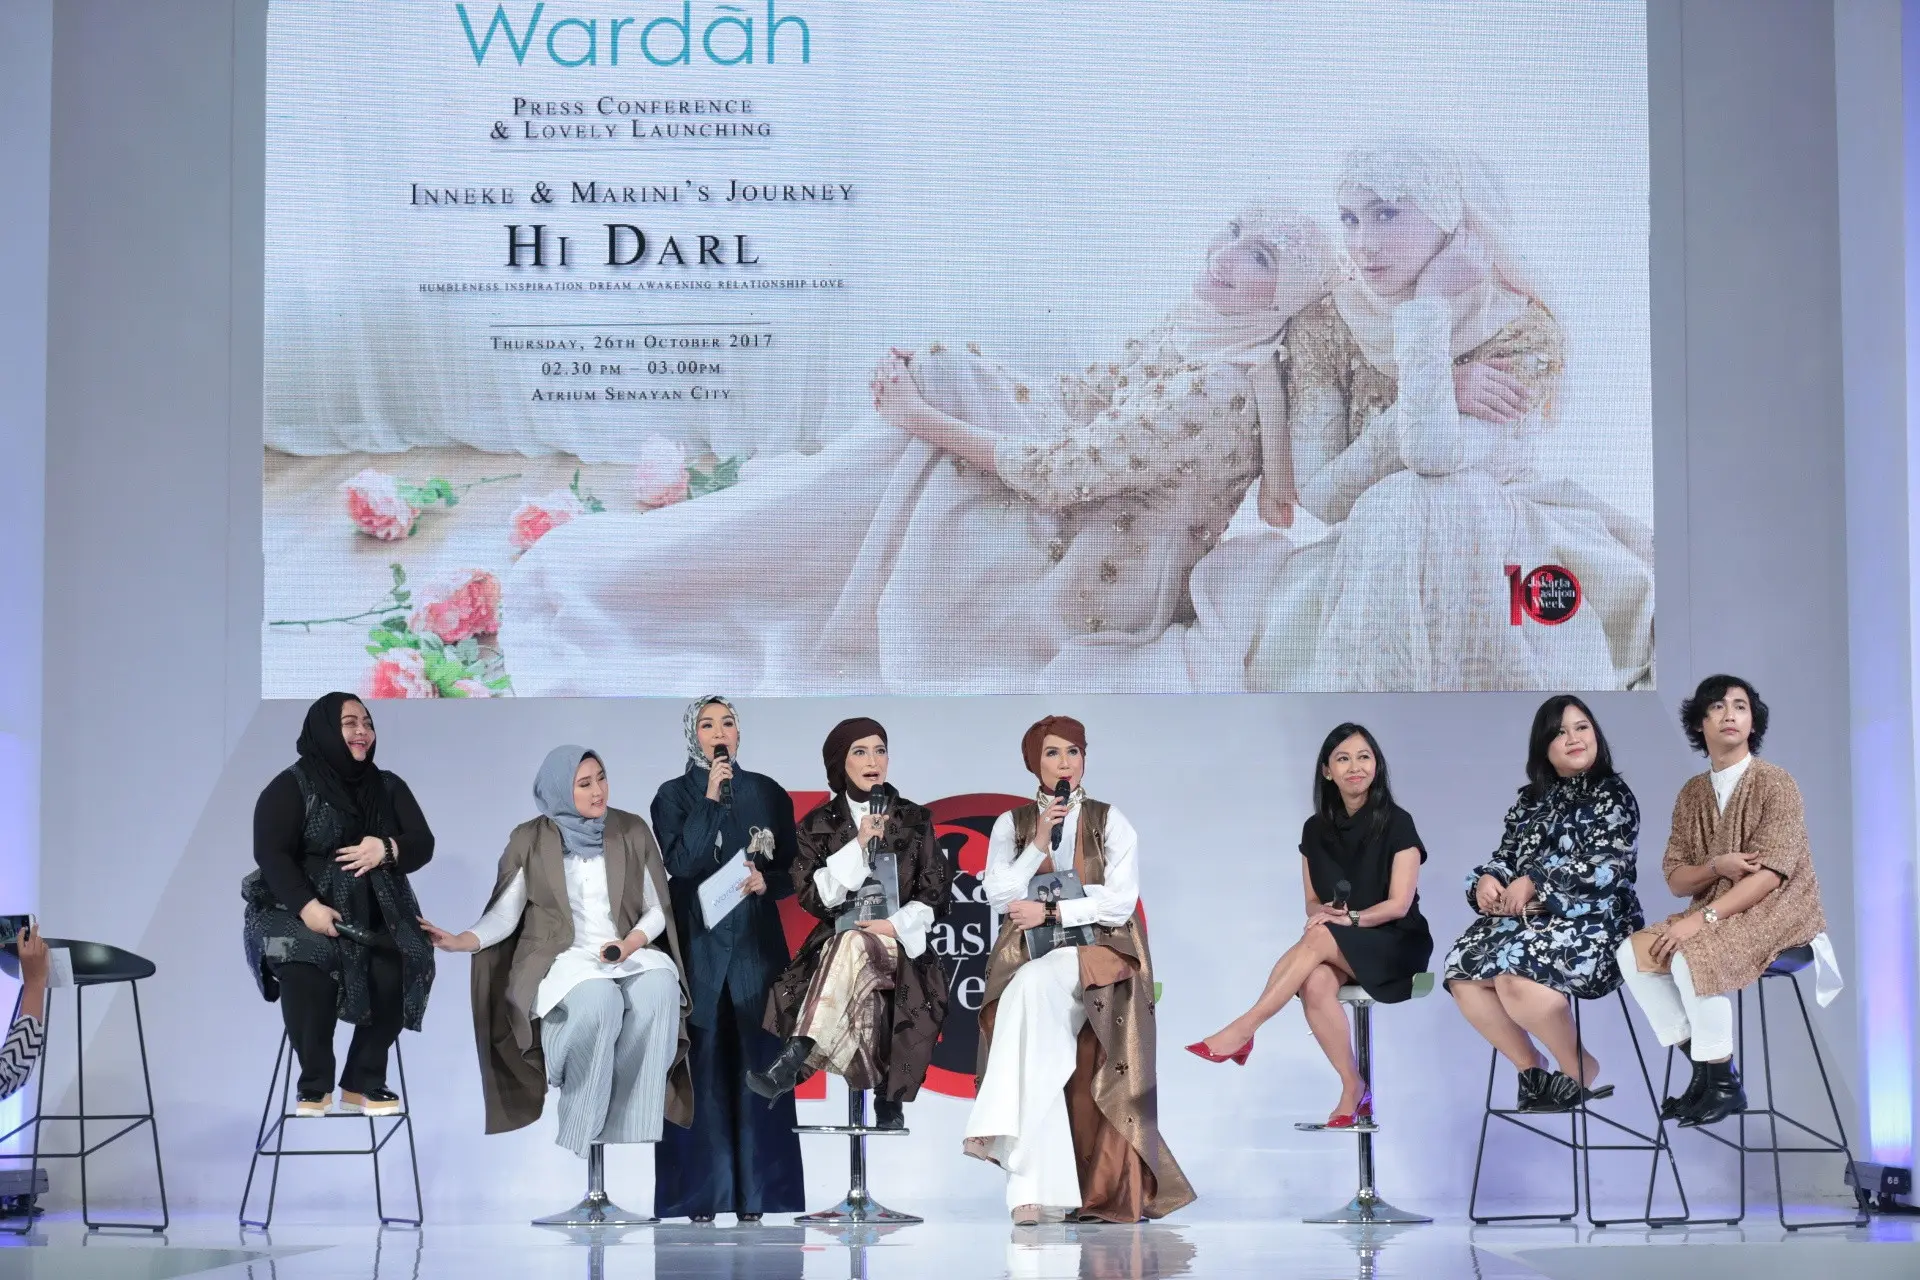 Inneke Koesherawati dan Marini Zumarnis baru saja meluncurkan buku dengan judul Inneke & Marini's Journey: Hi Darl. Peluncuran buku diadakan dalam acara Jakarta Fashion Week di Senayan City, Jakarta Selatan pada Kamis (26/10). (Adrian Putra/Bintang.com)